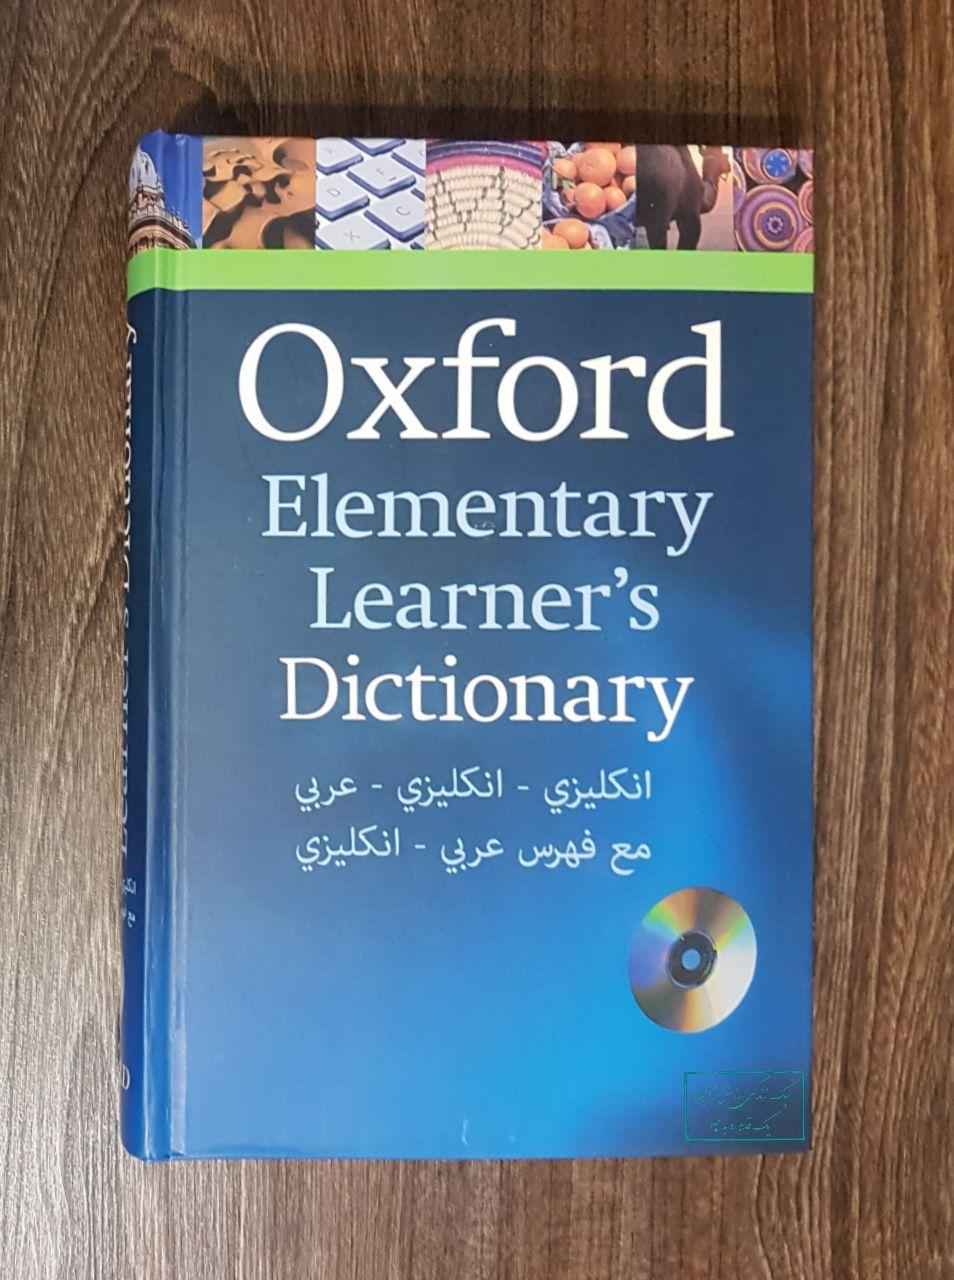 افضل القواميس الانجليزية - قاموس أكسفورد